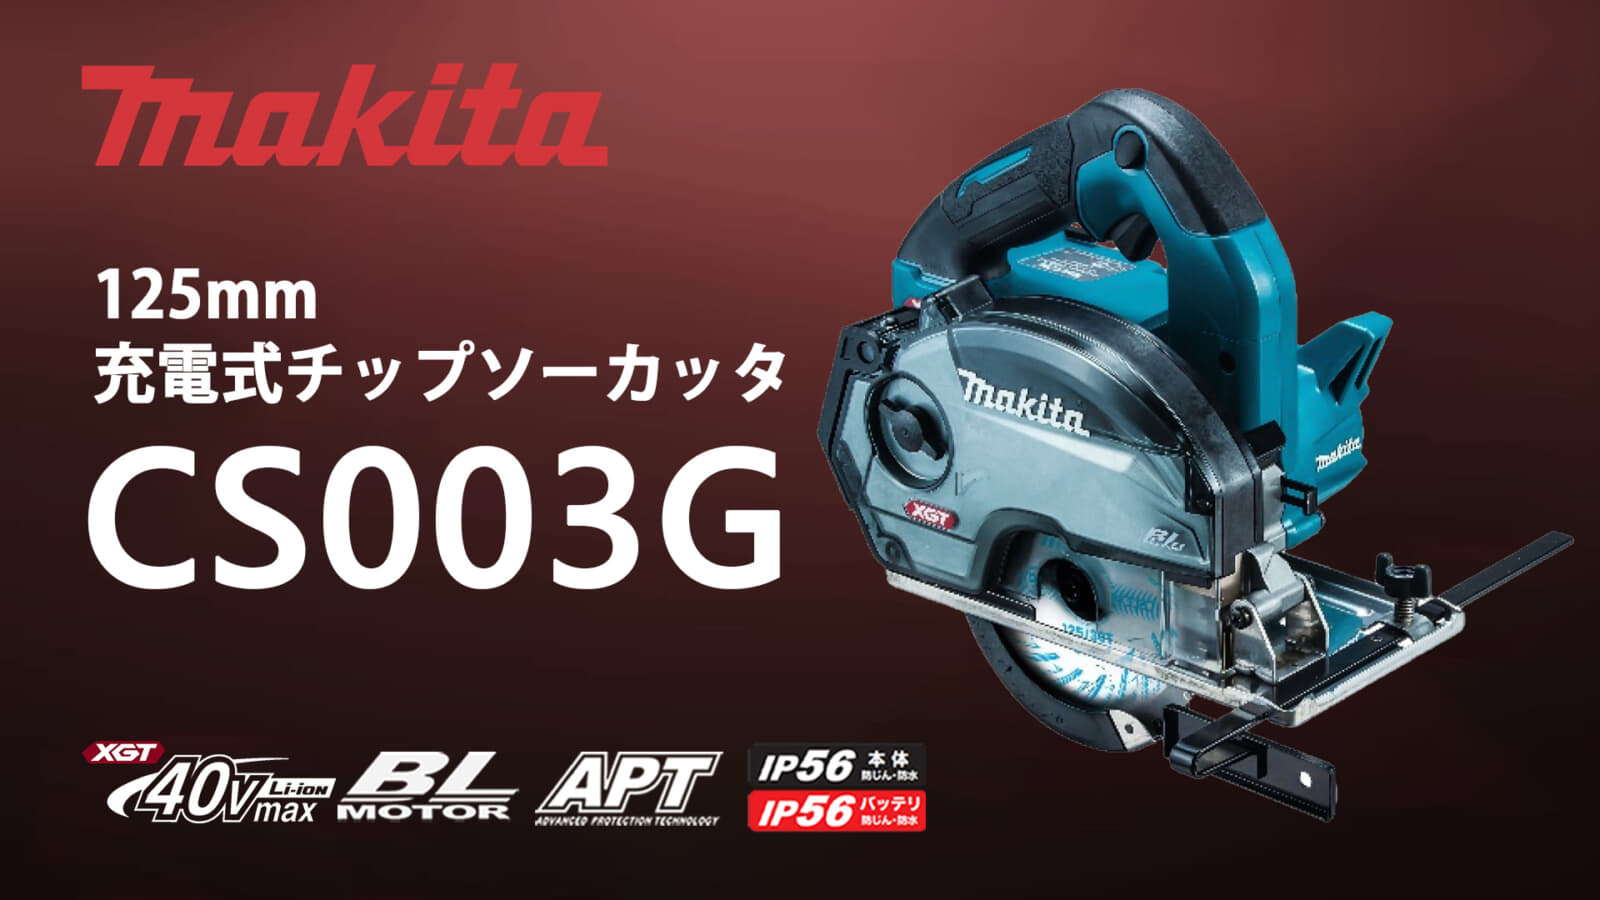 マキタ CS003G 充電式チップソーカッタを発売、取り回しに優れた125mm 